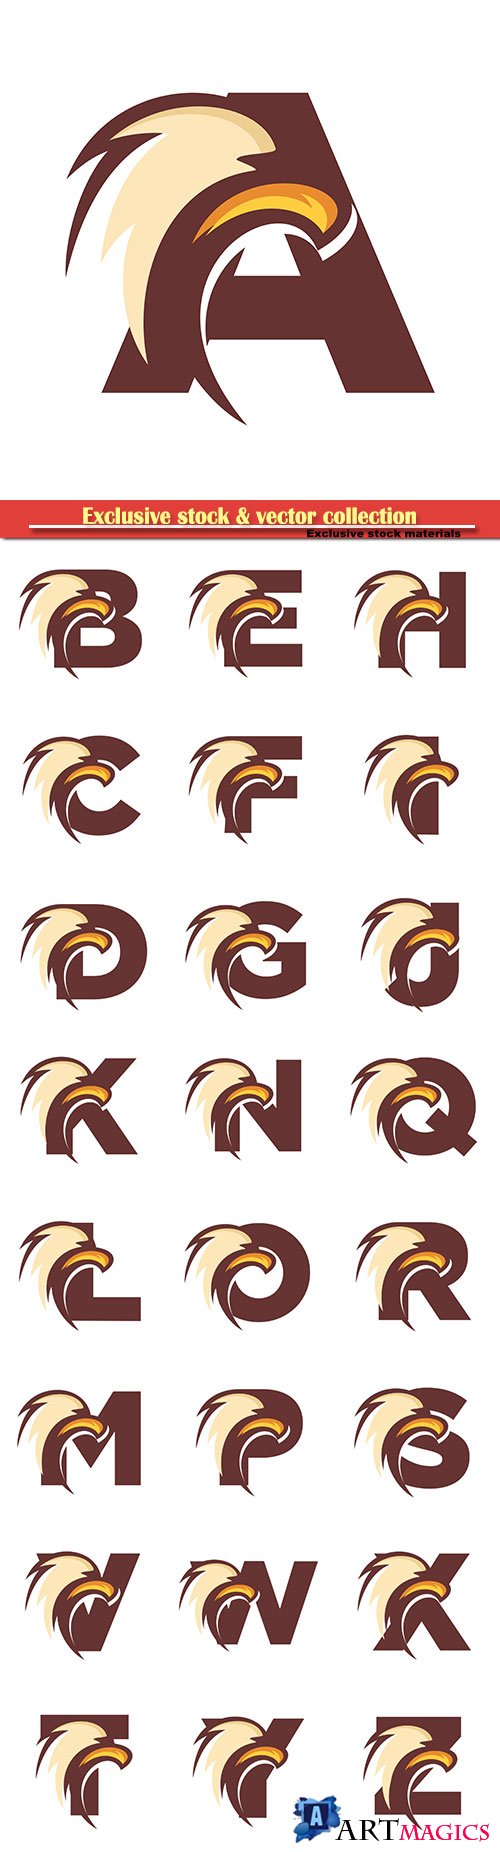 Eagle font vector alphabet illustration